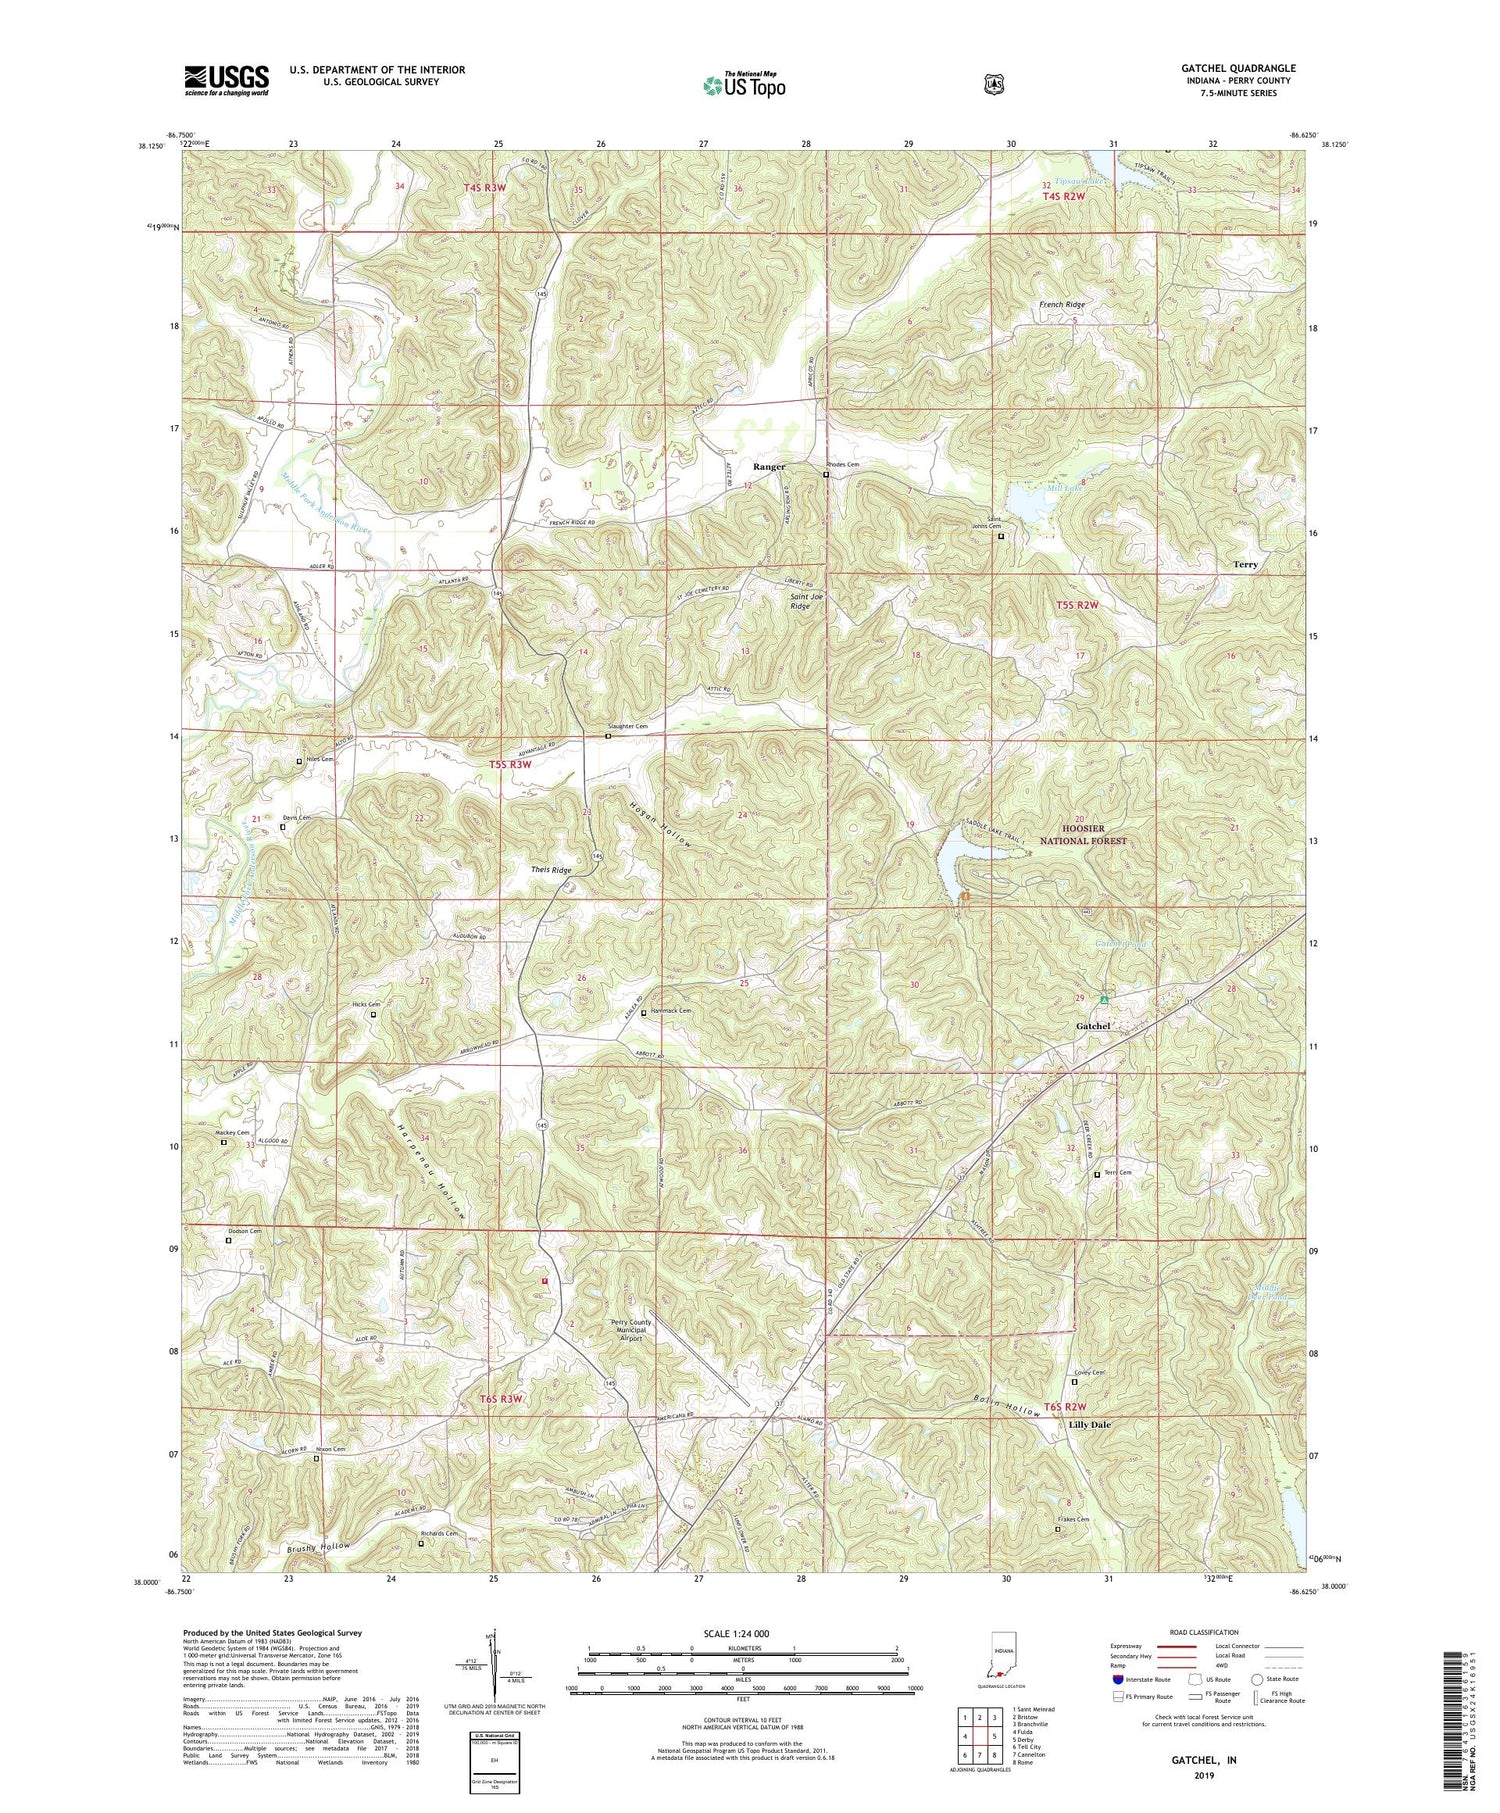 Gatchel Indiana US Topo Map Image